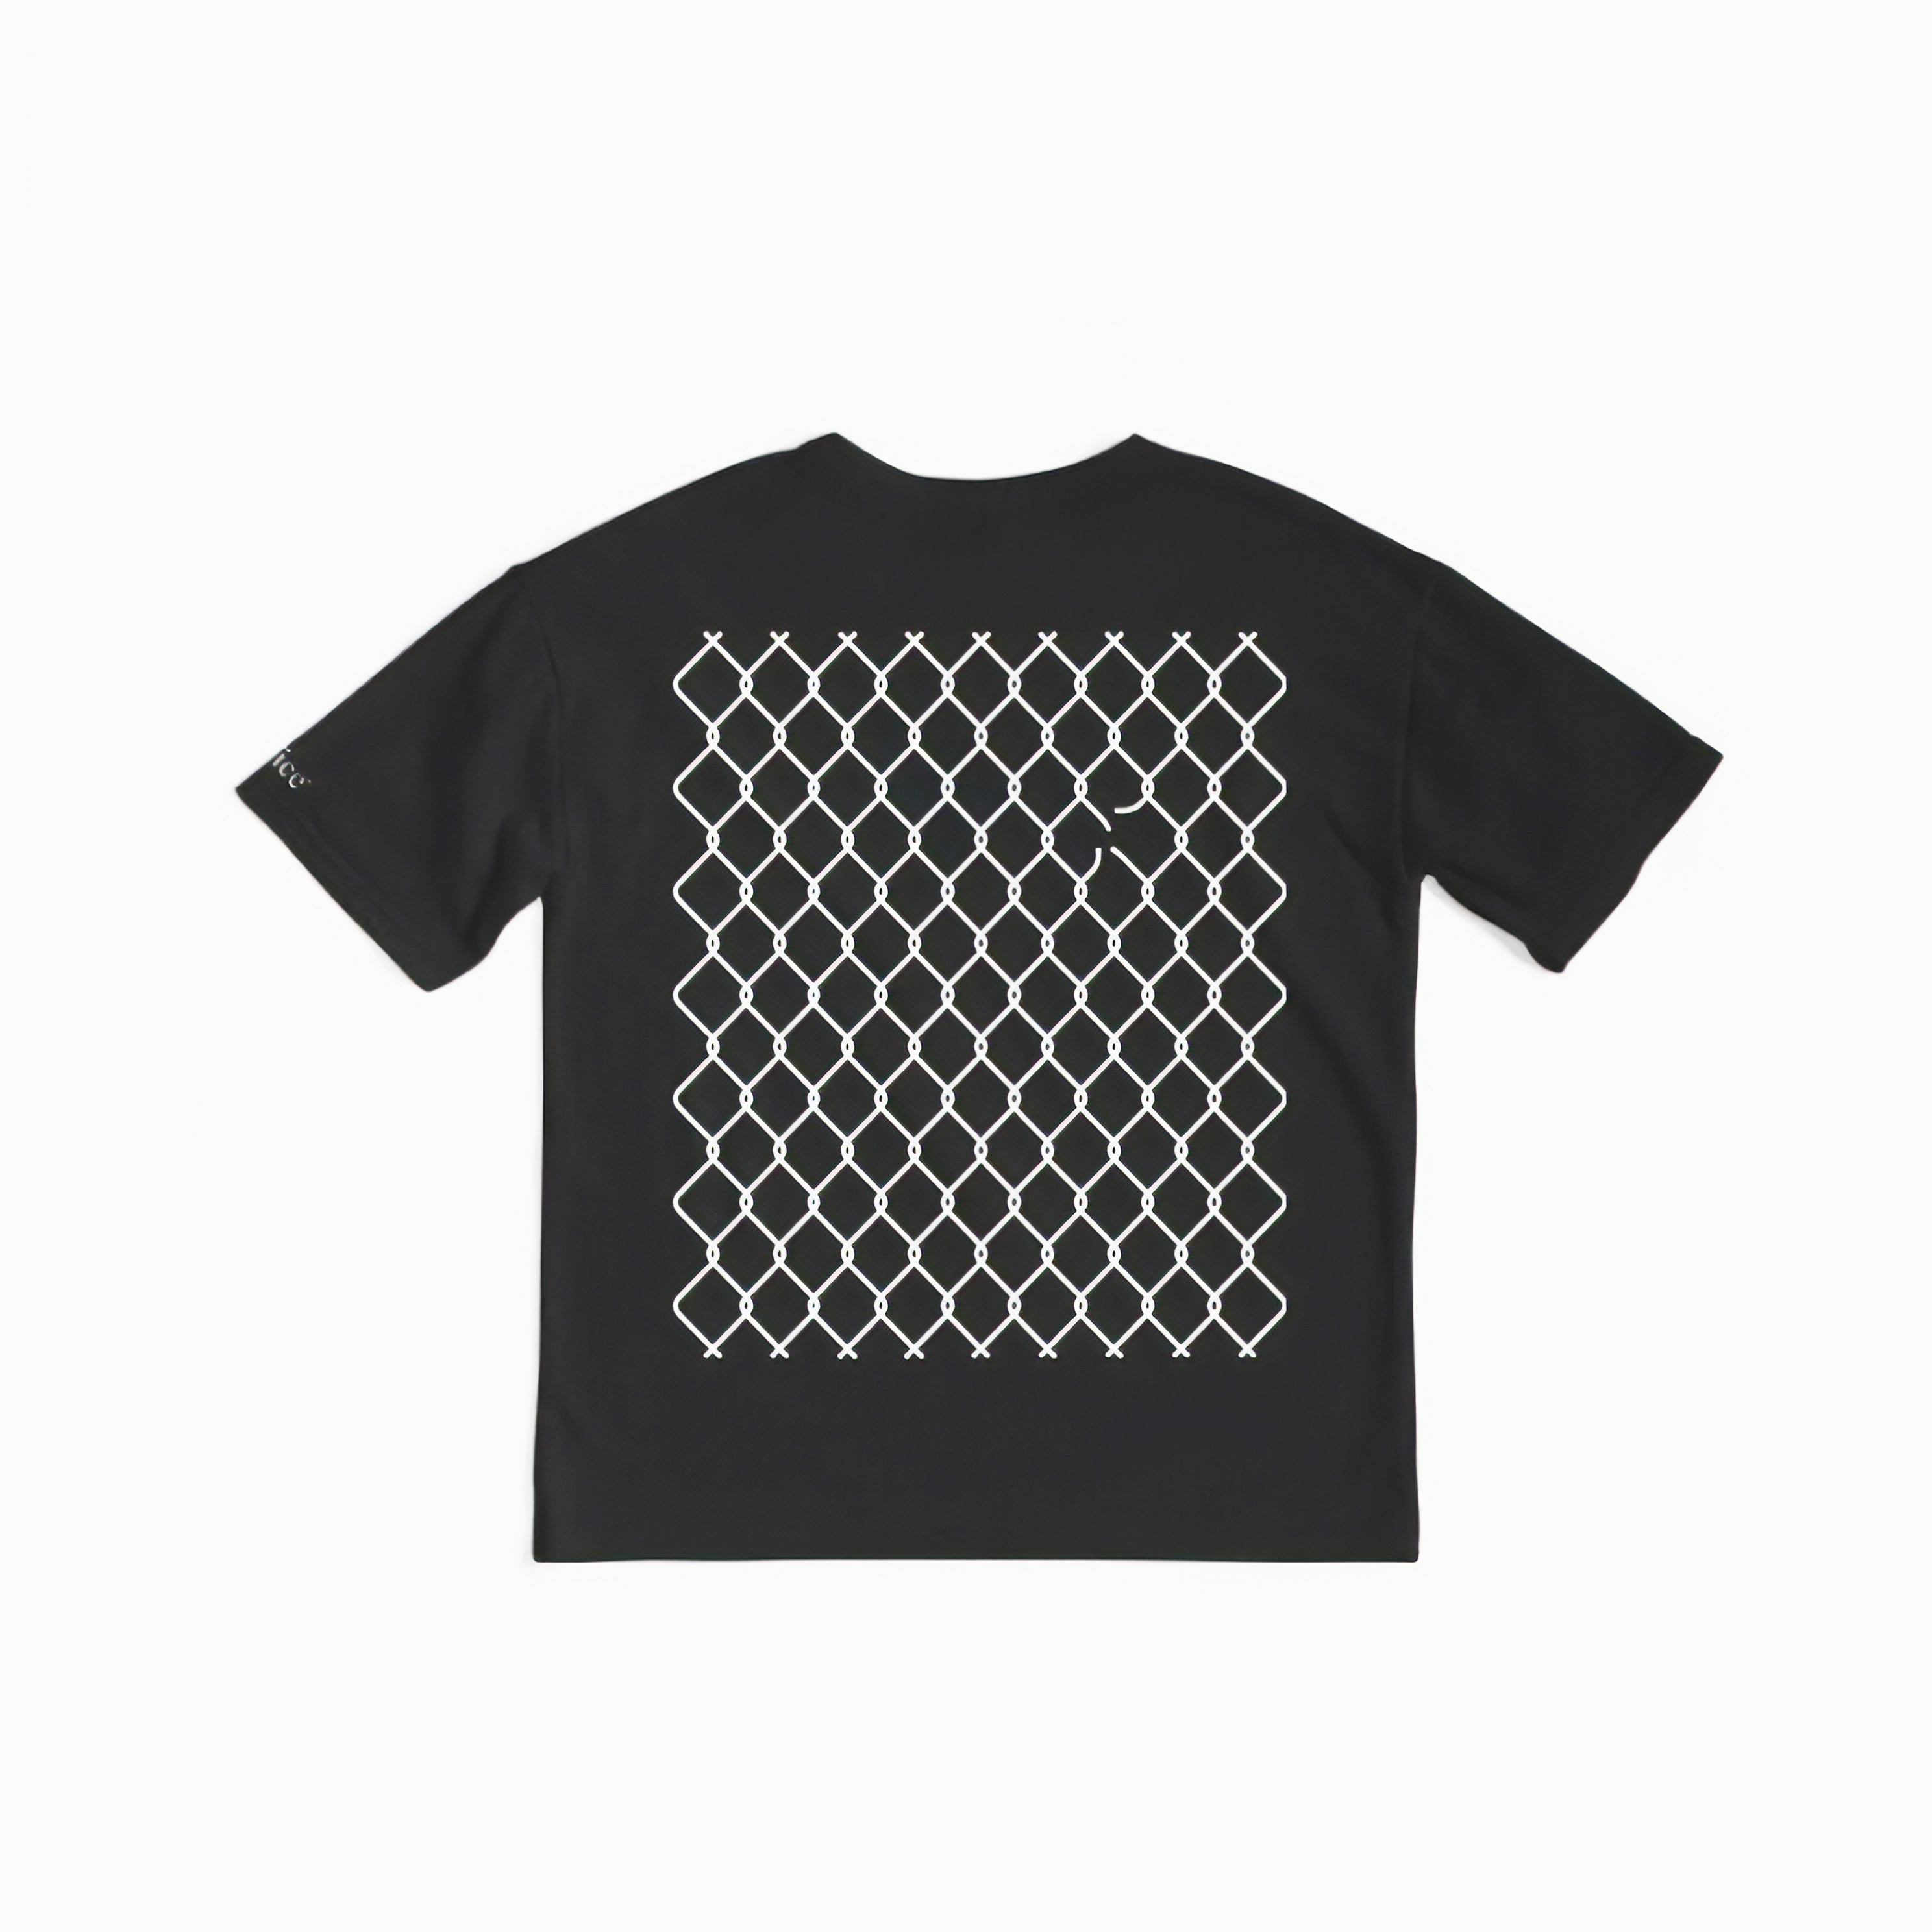 Axel Olson broken barriers t shirt design